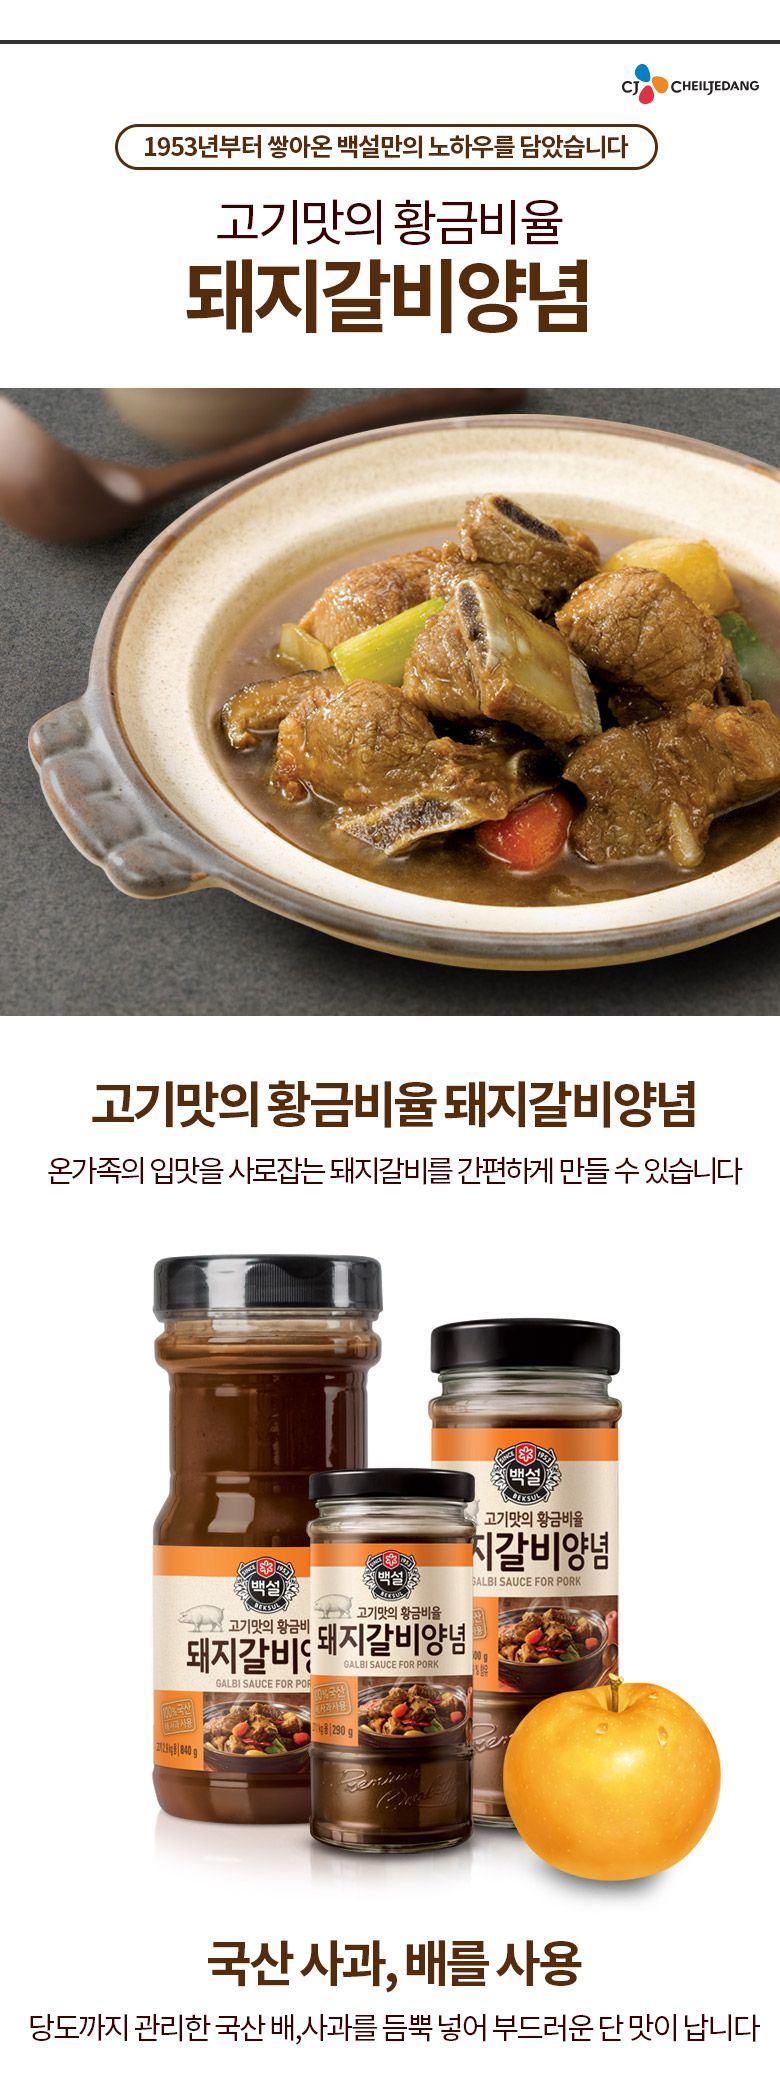 韓國食品-(Expiry Date: 3/5/2024)[CJ] 白雪 醃豬骨醬 500g